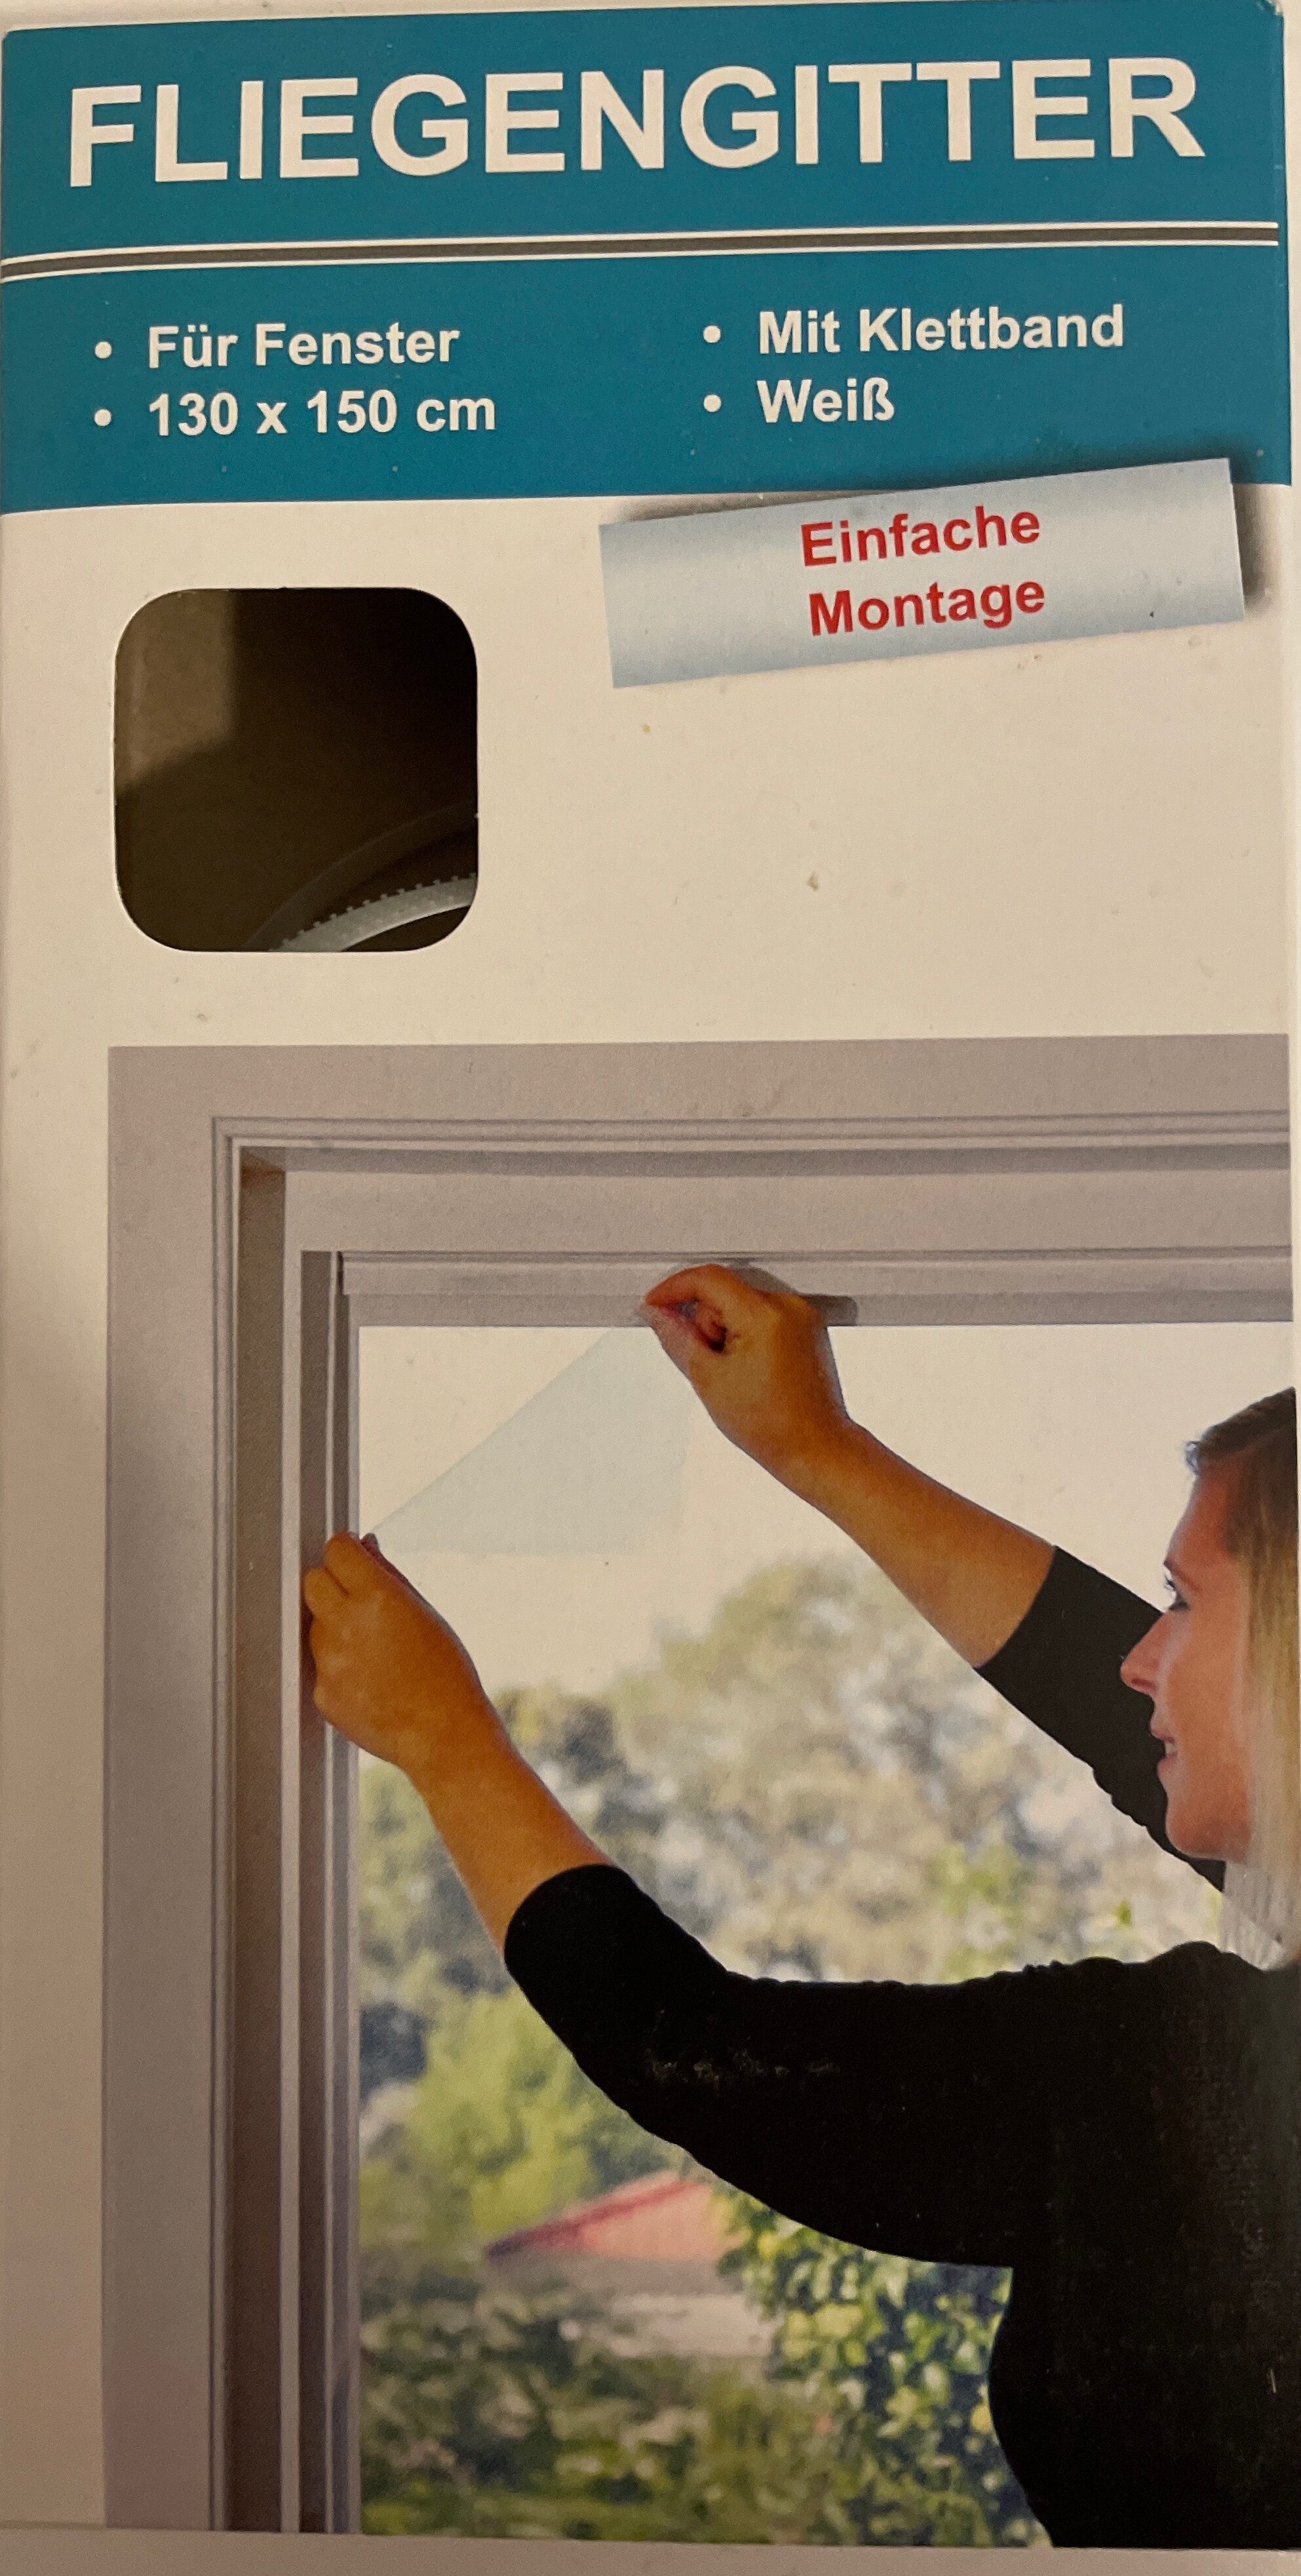 Fliegengitter für Fenster, weiß - Product - de